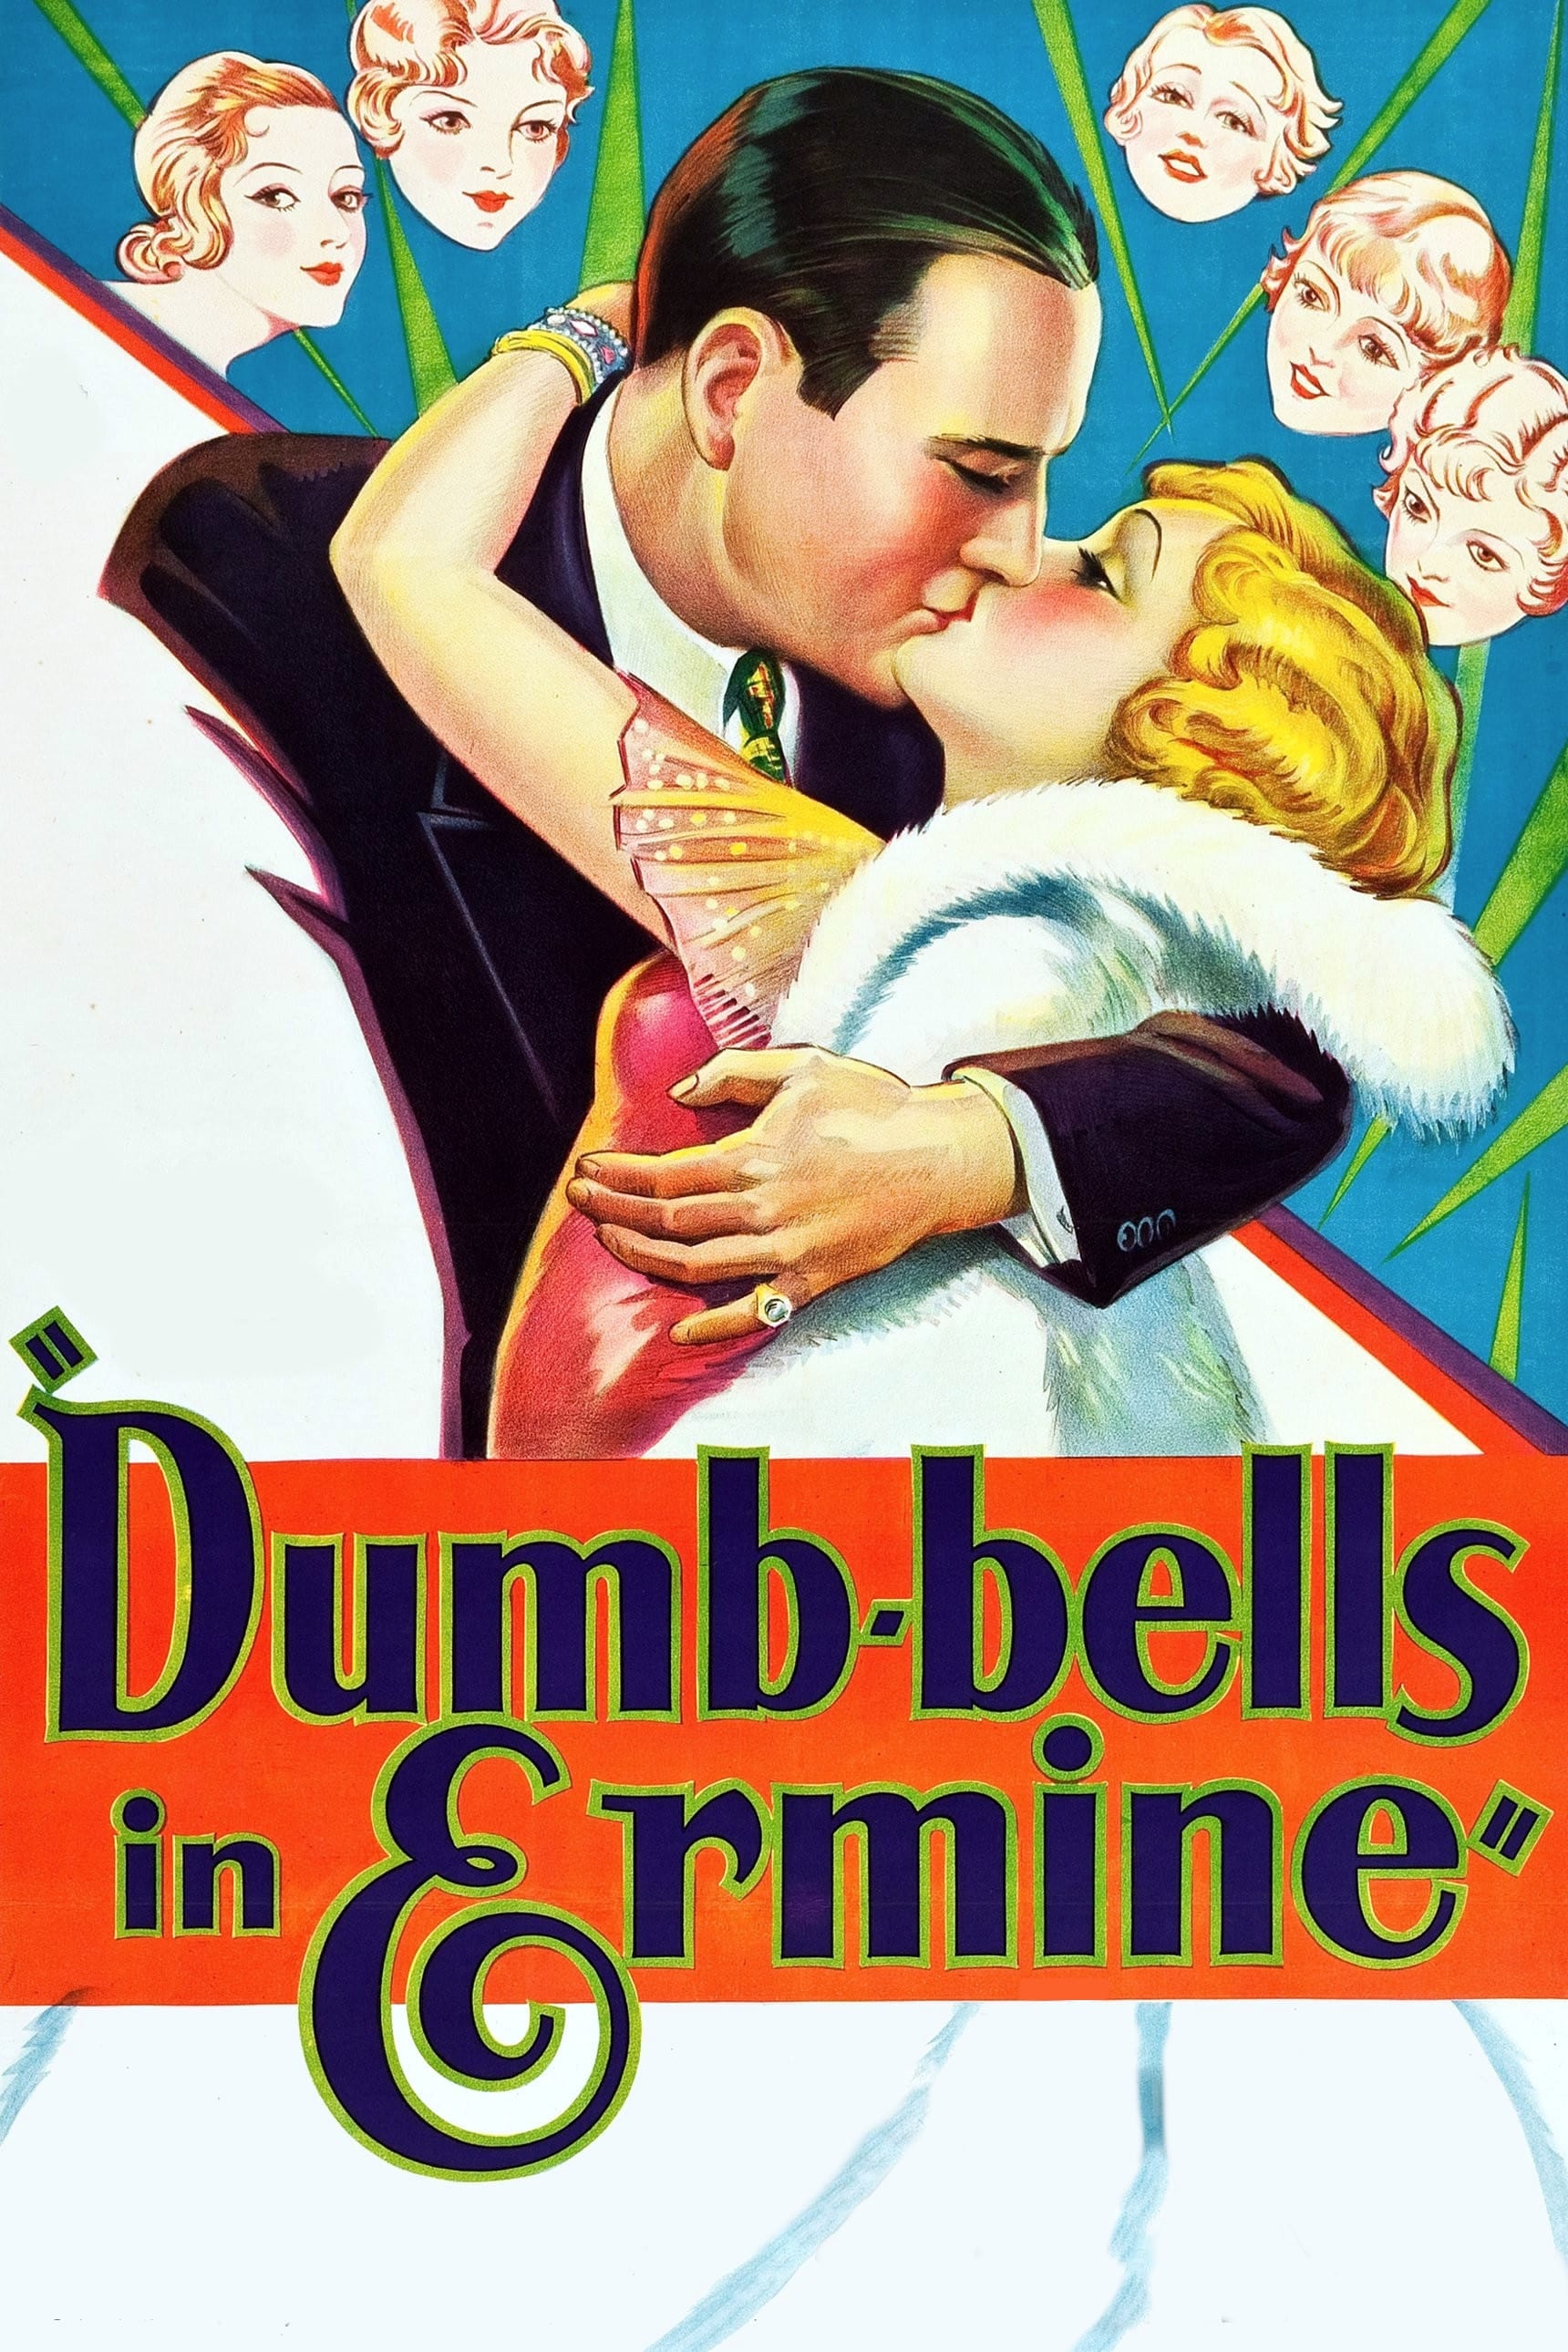 Dumb-bells in Ermine